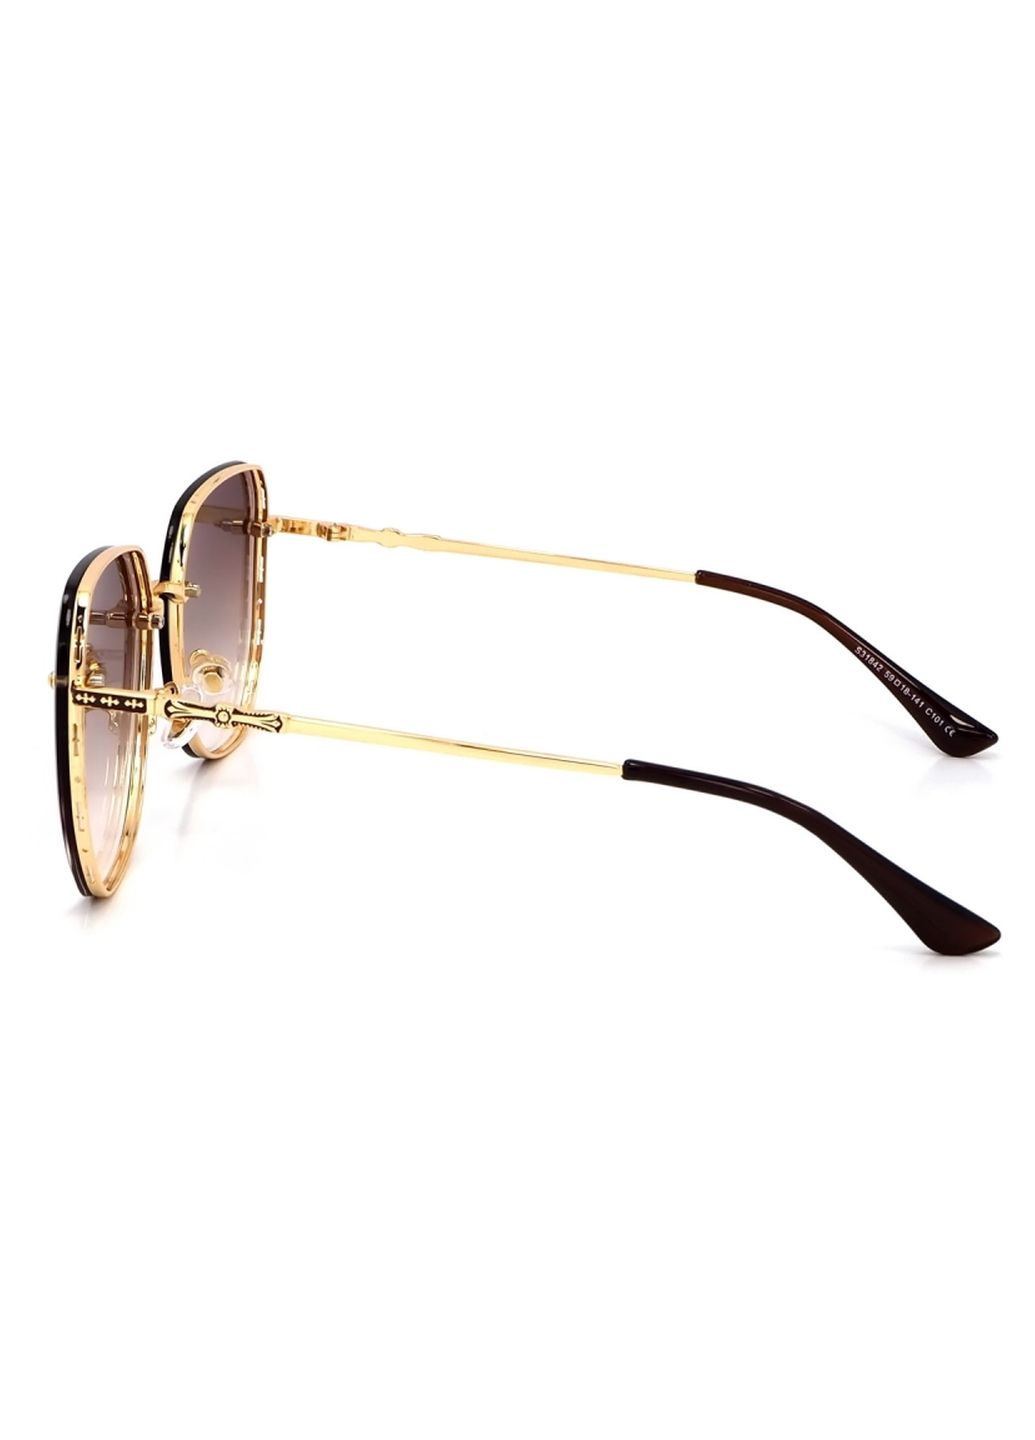 Купить Женские солнцезащитные очки Merlini с поляризацией S31842 117125 - Золотистый в интернет-магазине